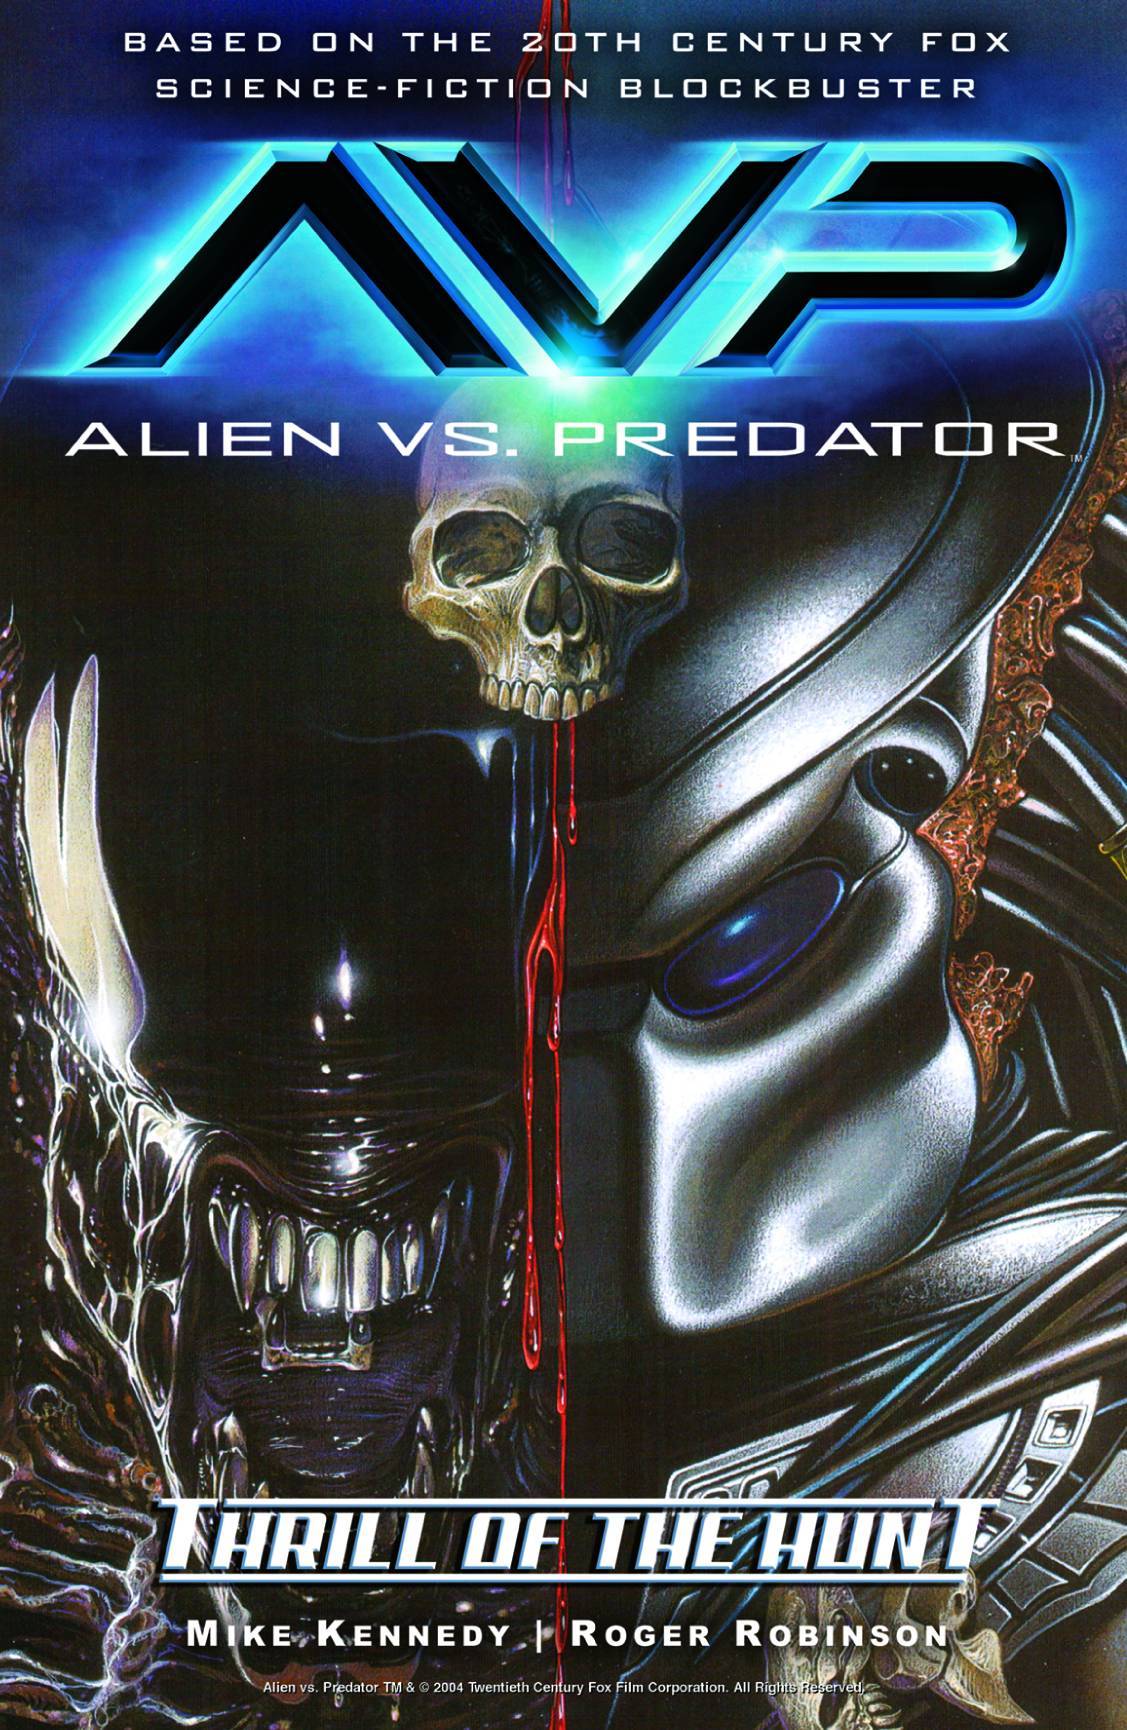 Aliens vs. Predator Volume 1